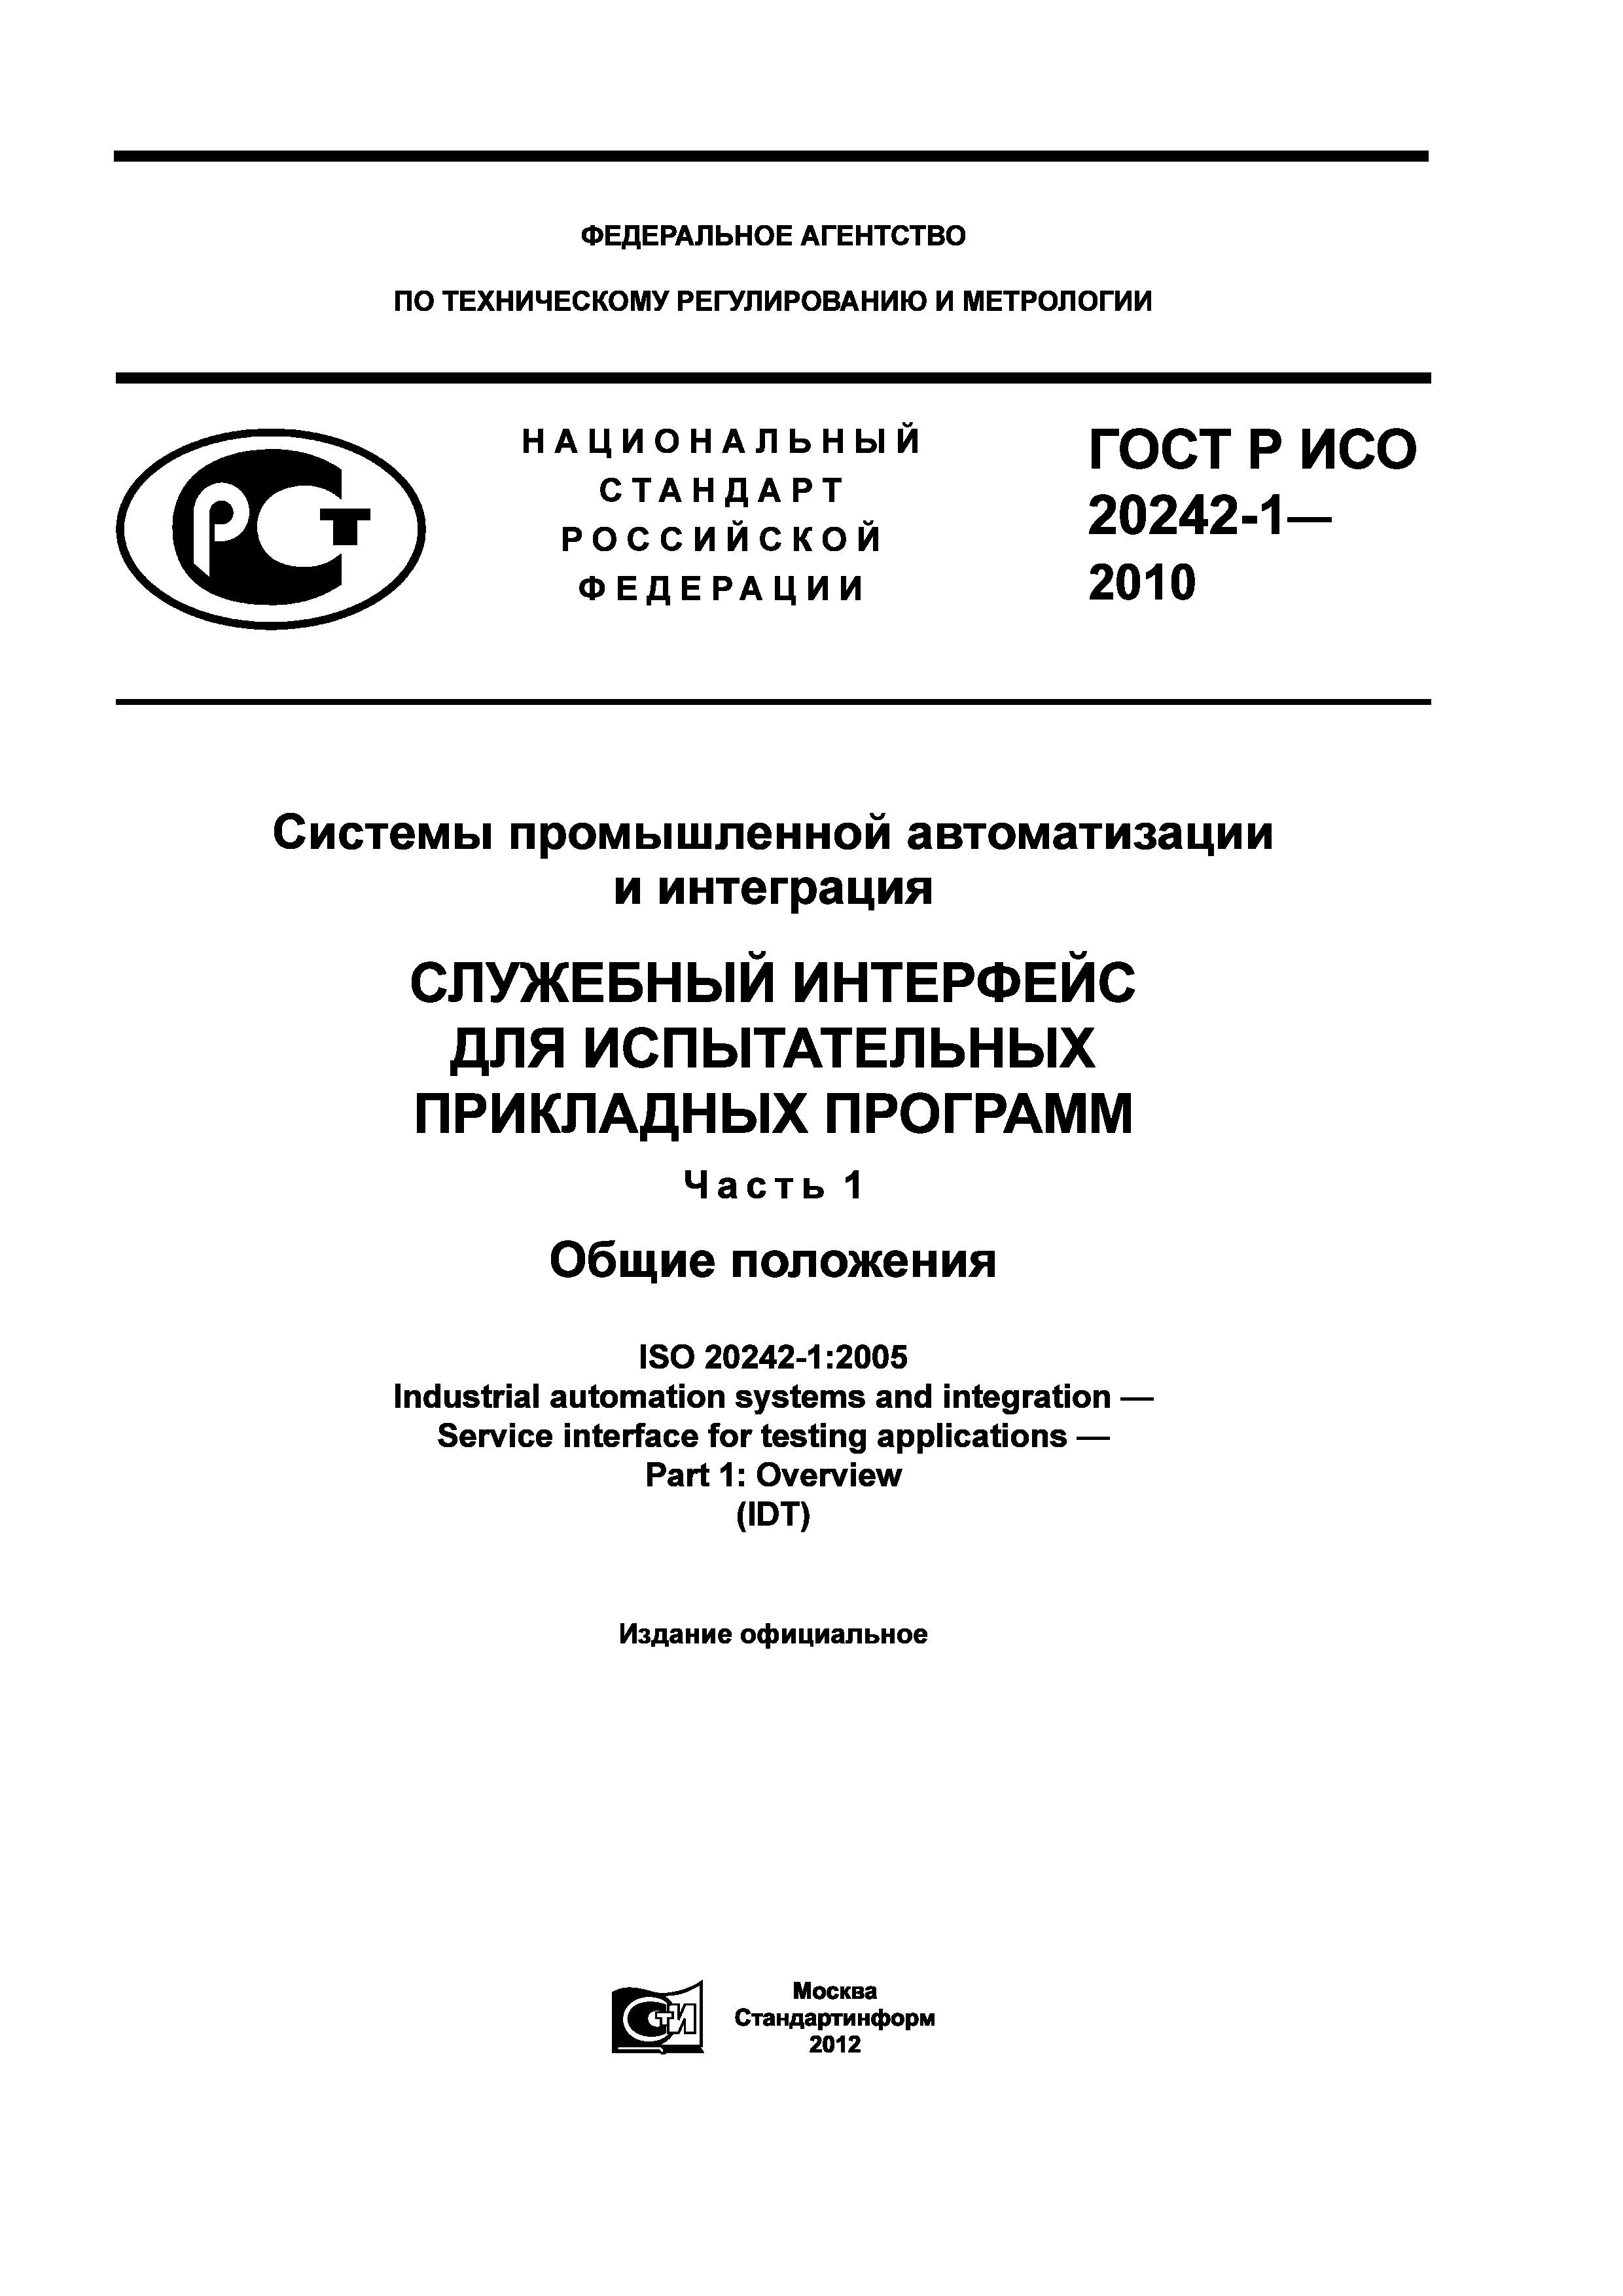 ГОСТ Р ИСО 20242-1-2010